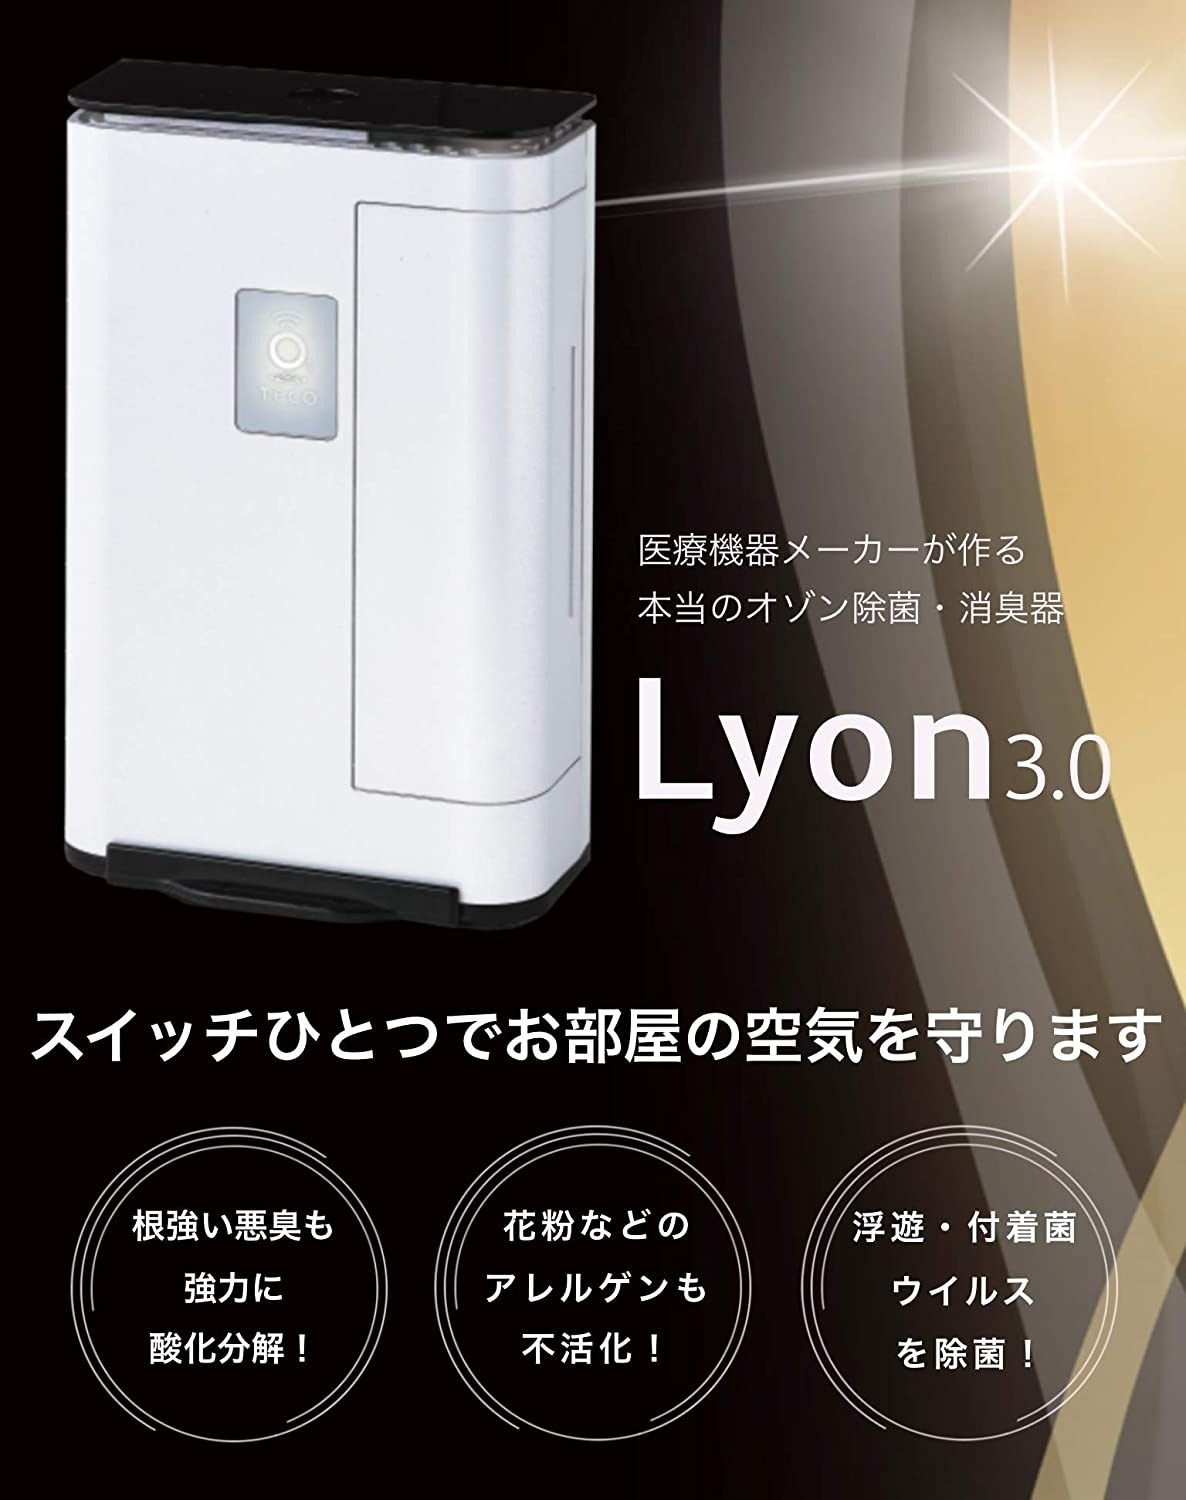 パワフルな消臭・除菌力の日本製オゾン発生器「タムラテコ Lyon」を 